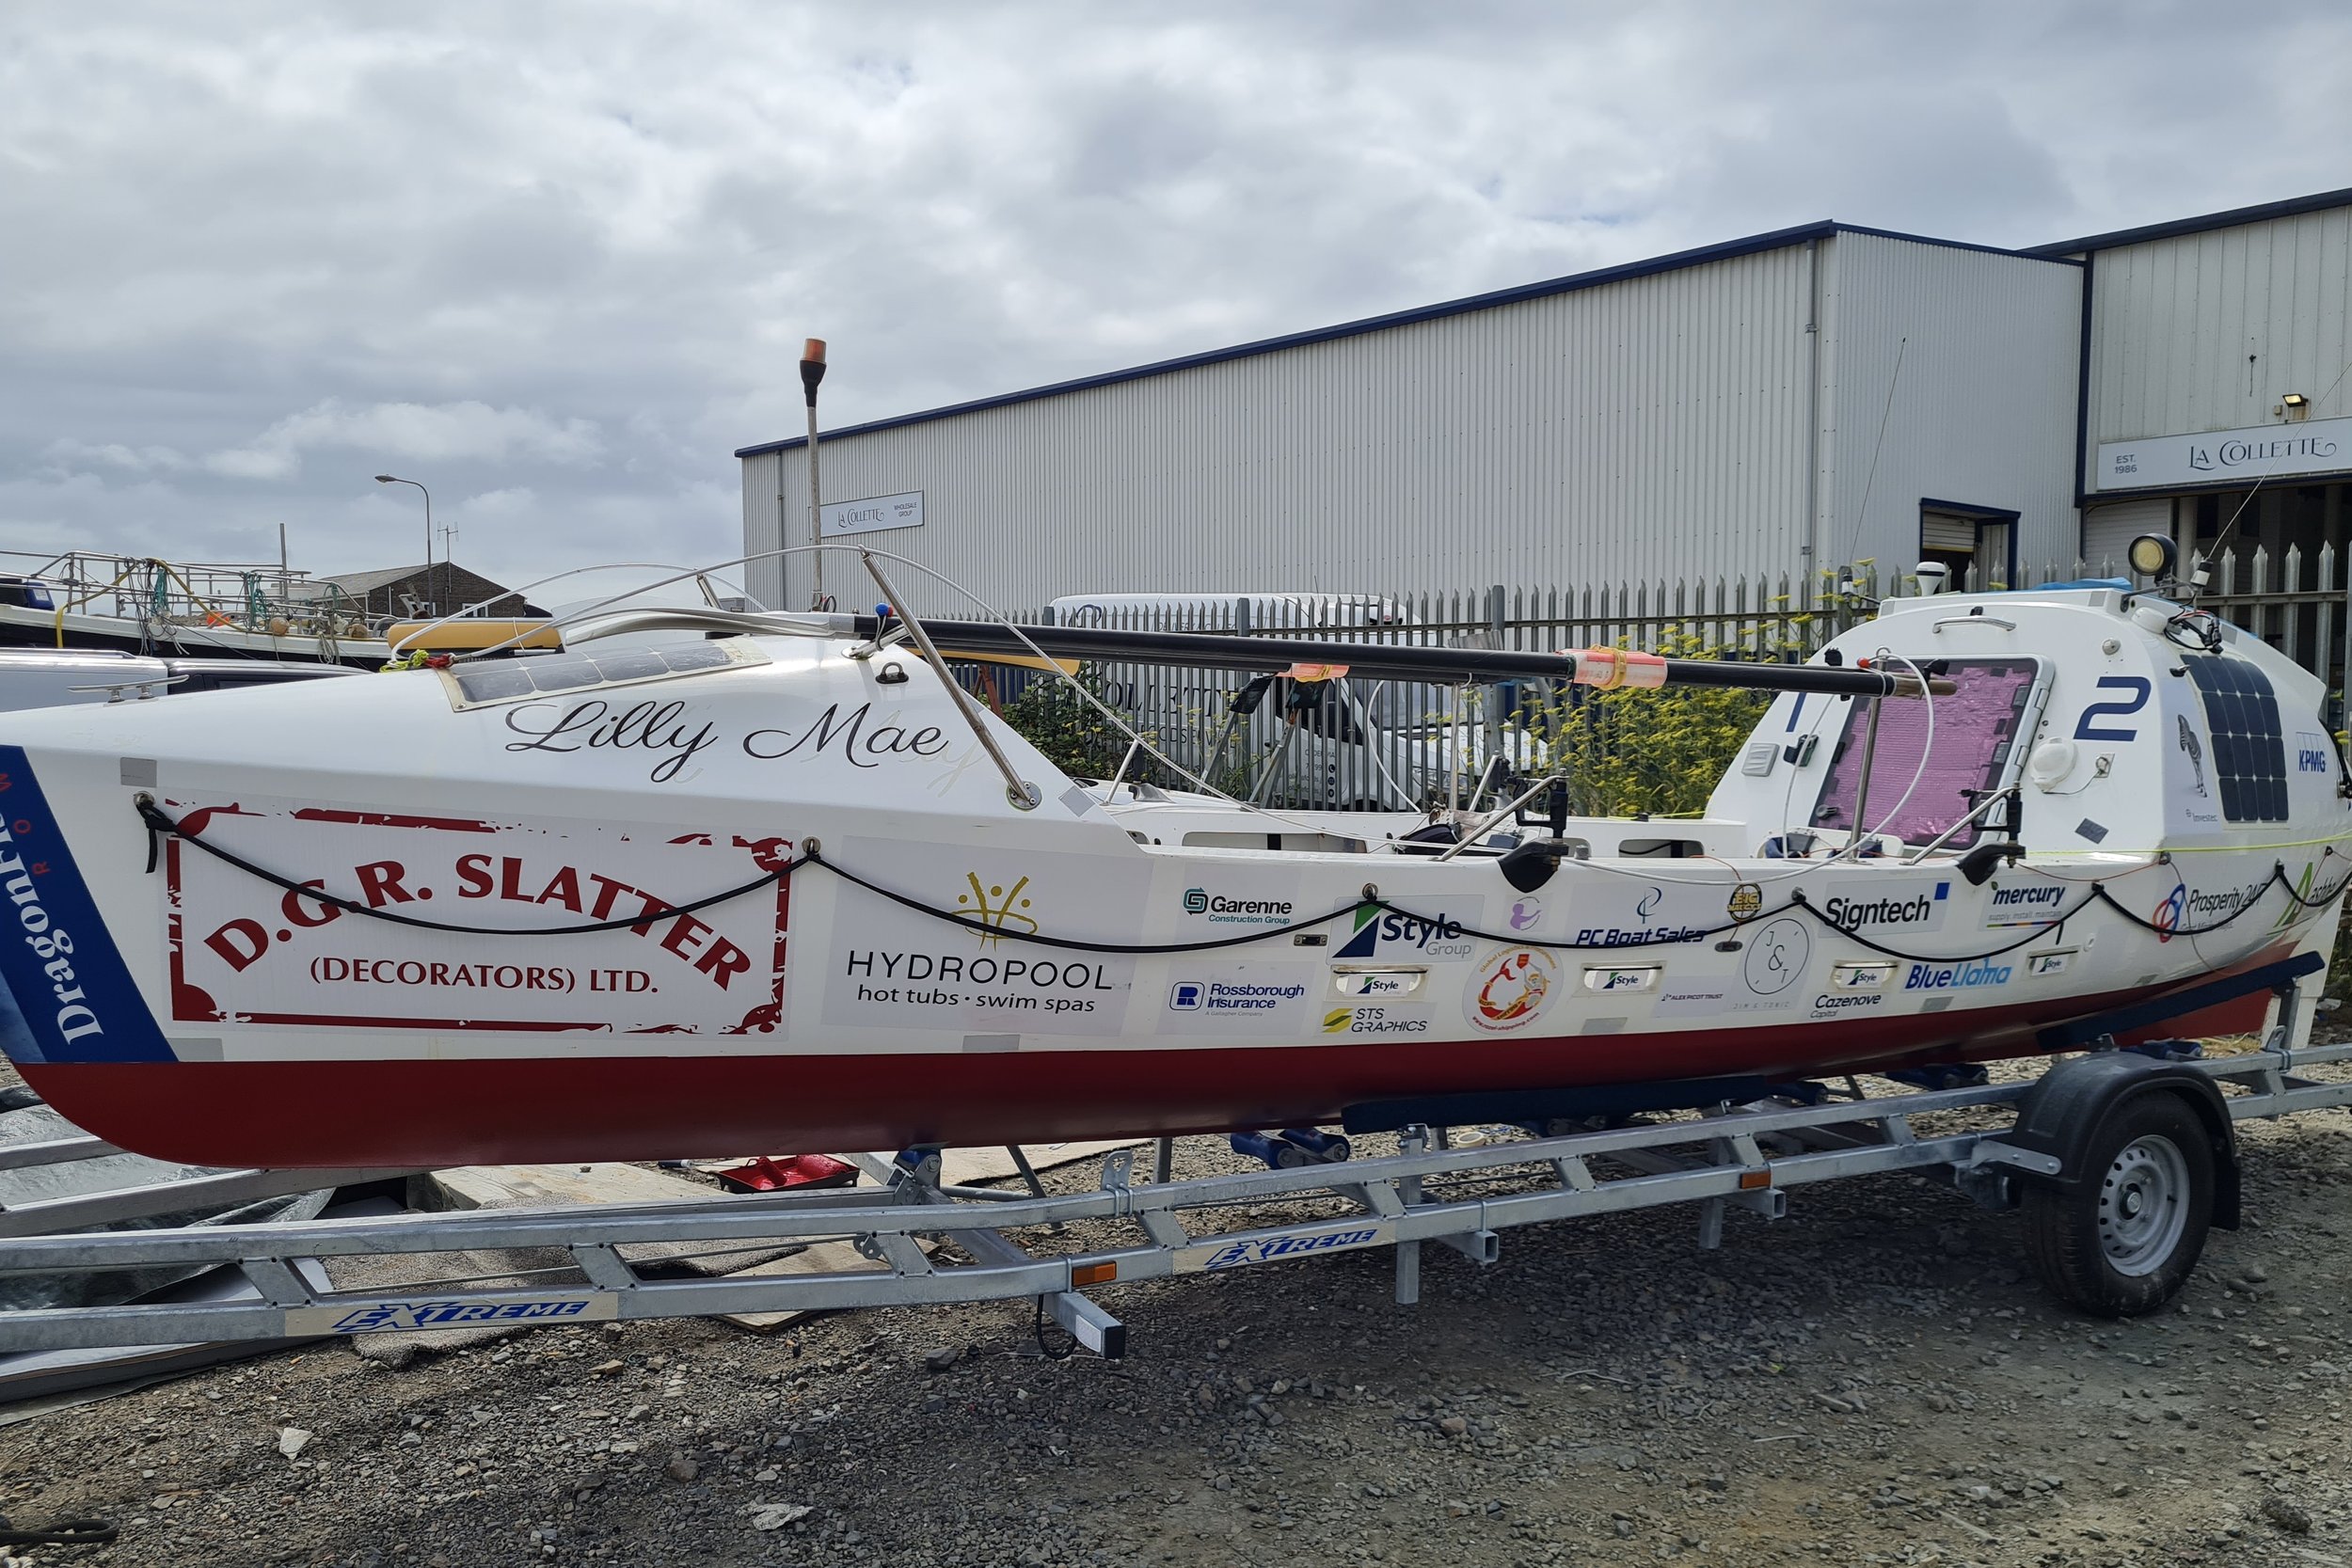 Sogno Atlantico image 5 ocean rowing boat for sale.jpg